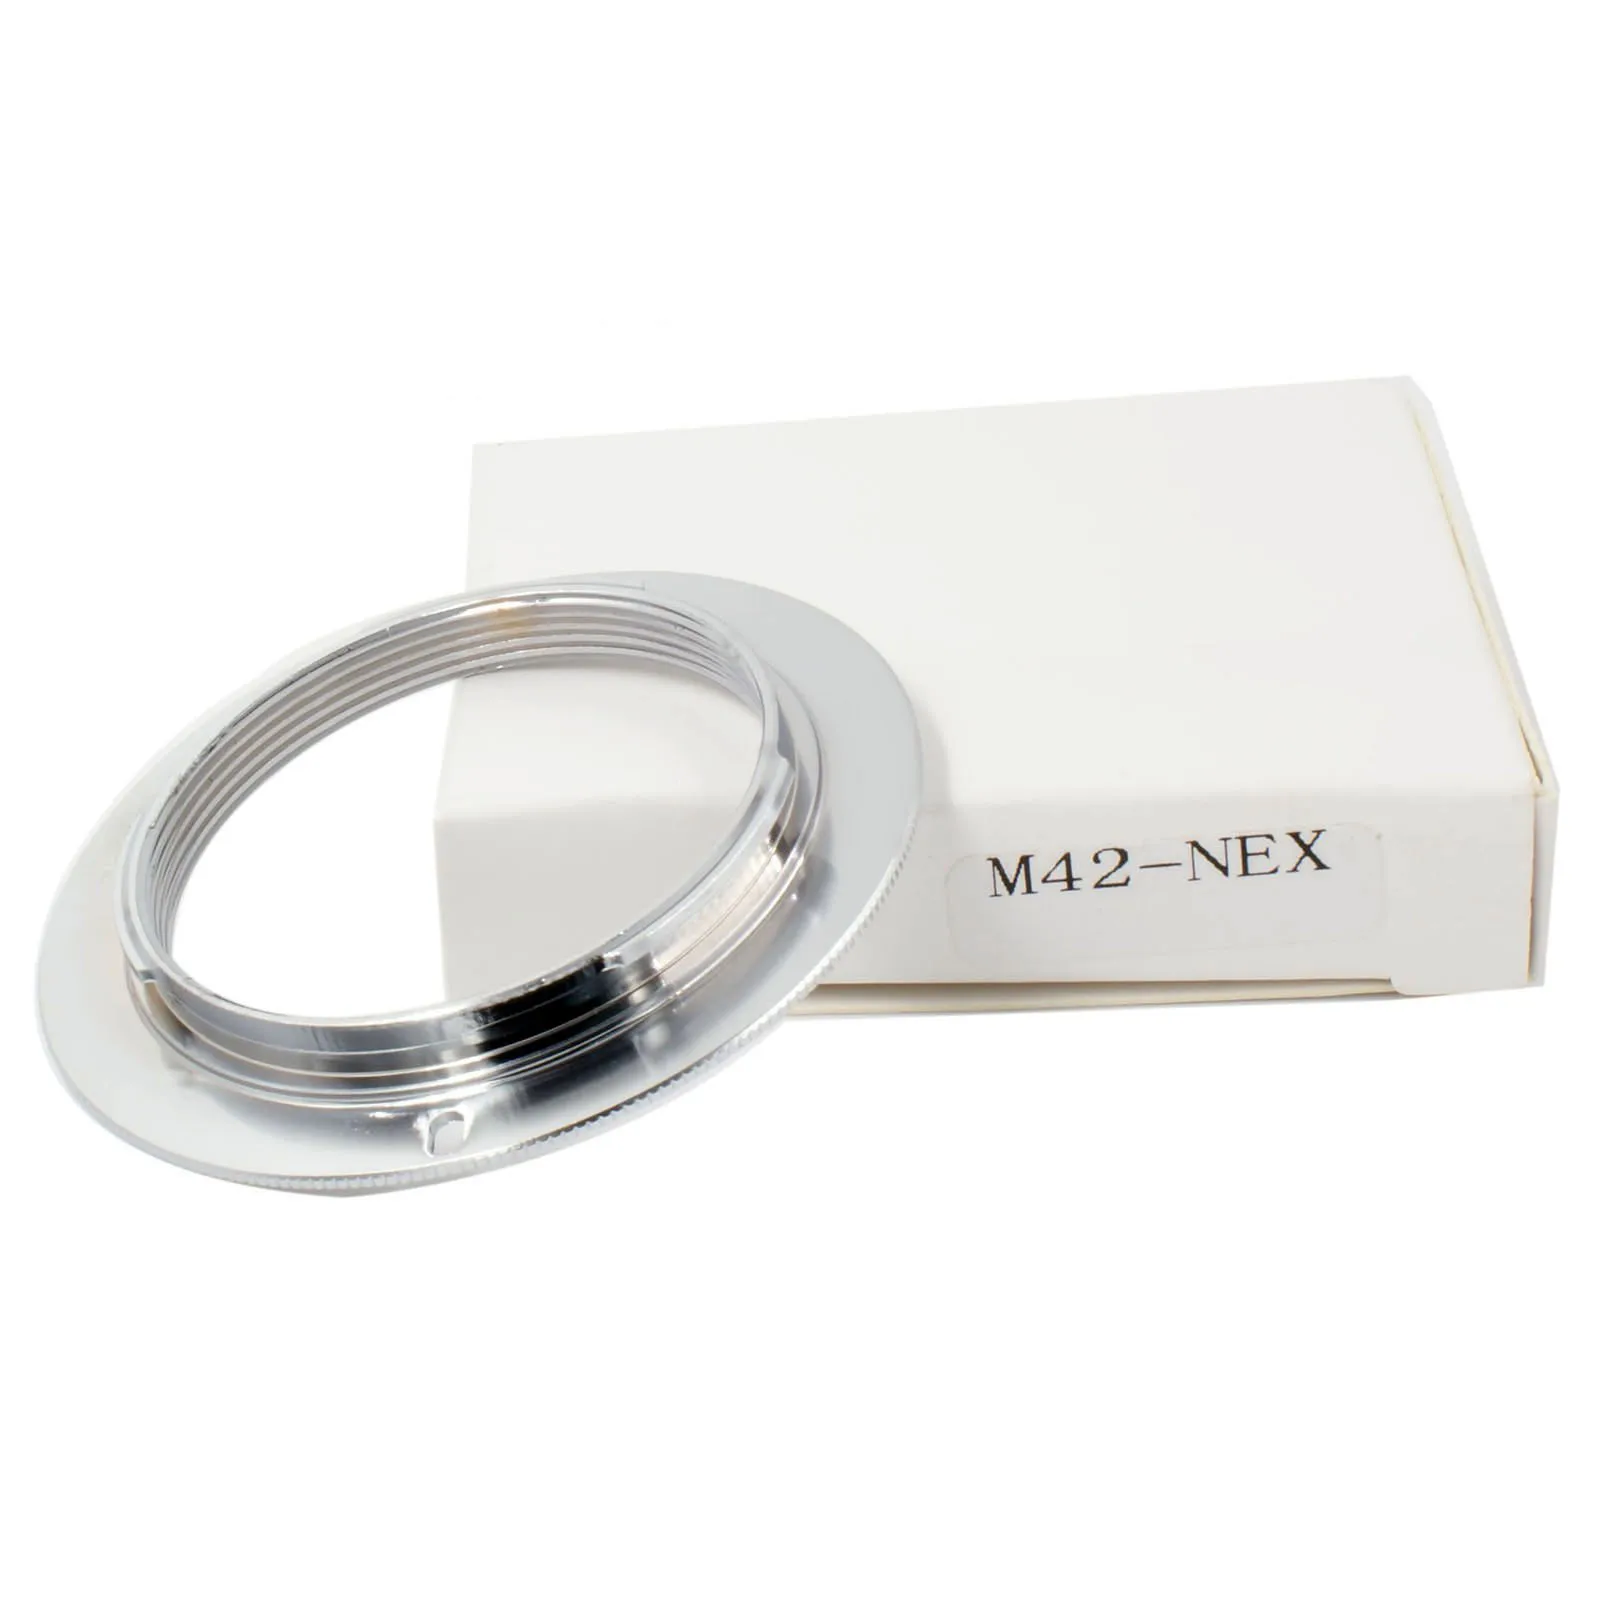 M42-nex slim adapteris žiedas M42 42mm objektyvas sony E mount NEX NEX-3/C3/5N/6/7 A7 A7II A7r A5100 A7s A3000 A5000 A6000 fotoaparatas